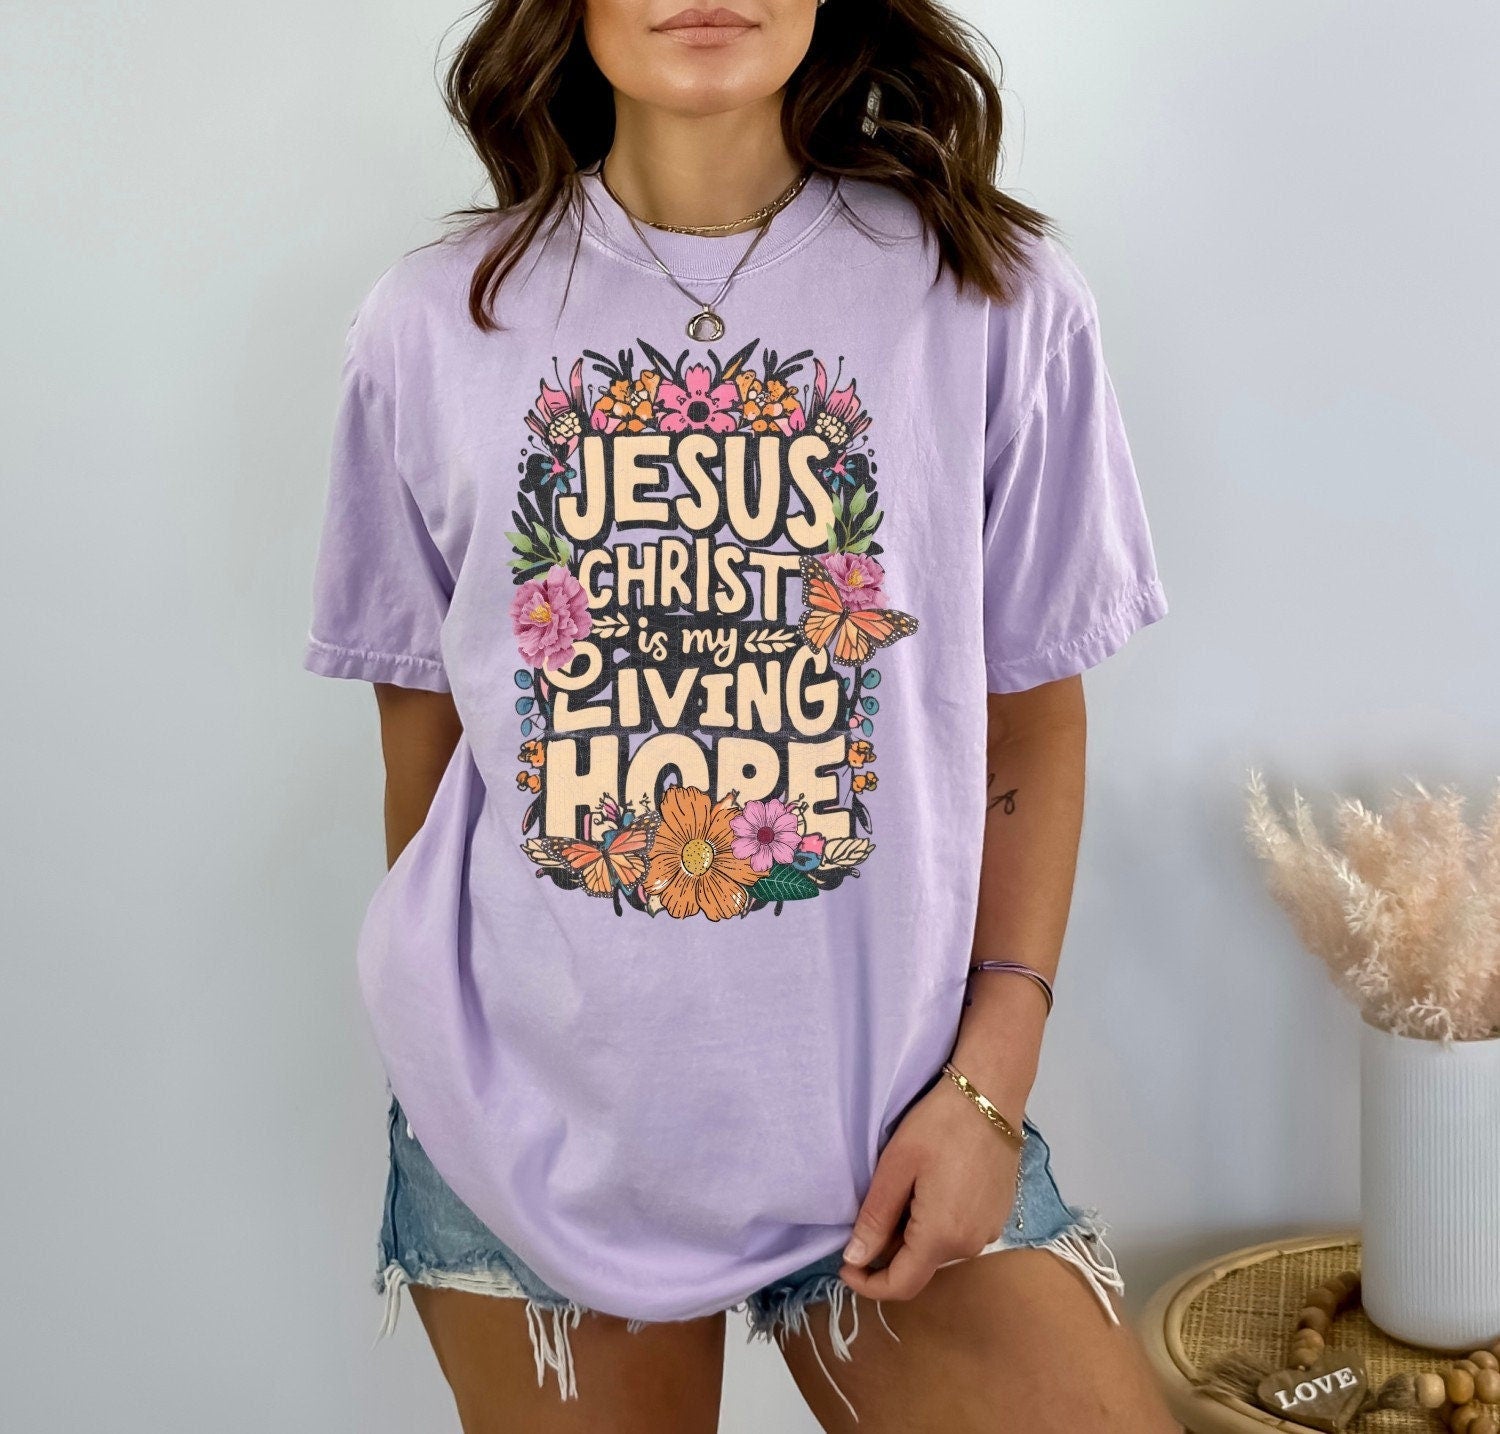 Christian Shirts Religious Tshirt Boho Christian Shirt Christian T Shirts Bible Verse Shirt Jesus Christ is my Living Hope Shirt